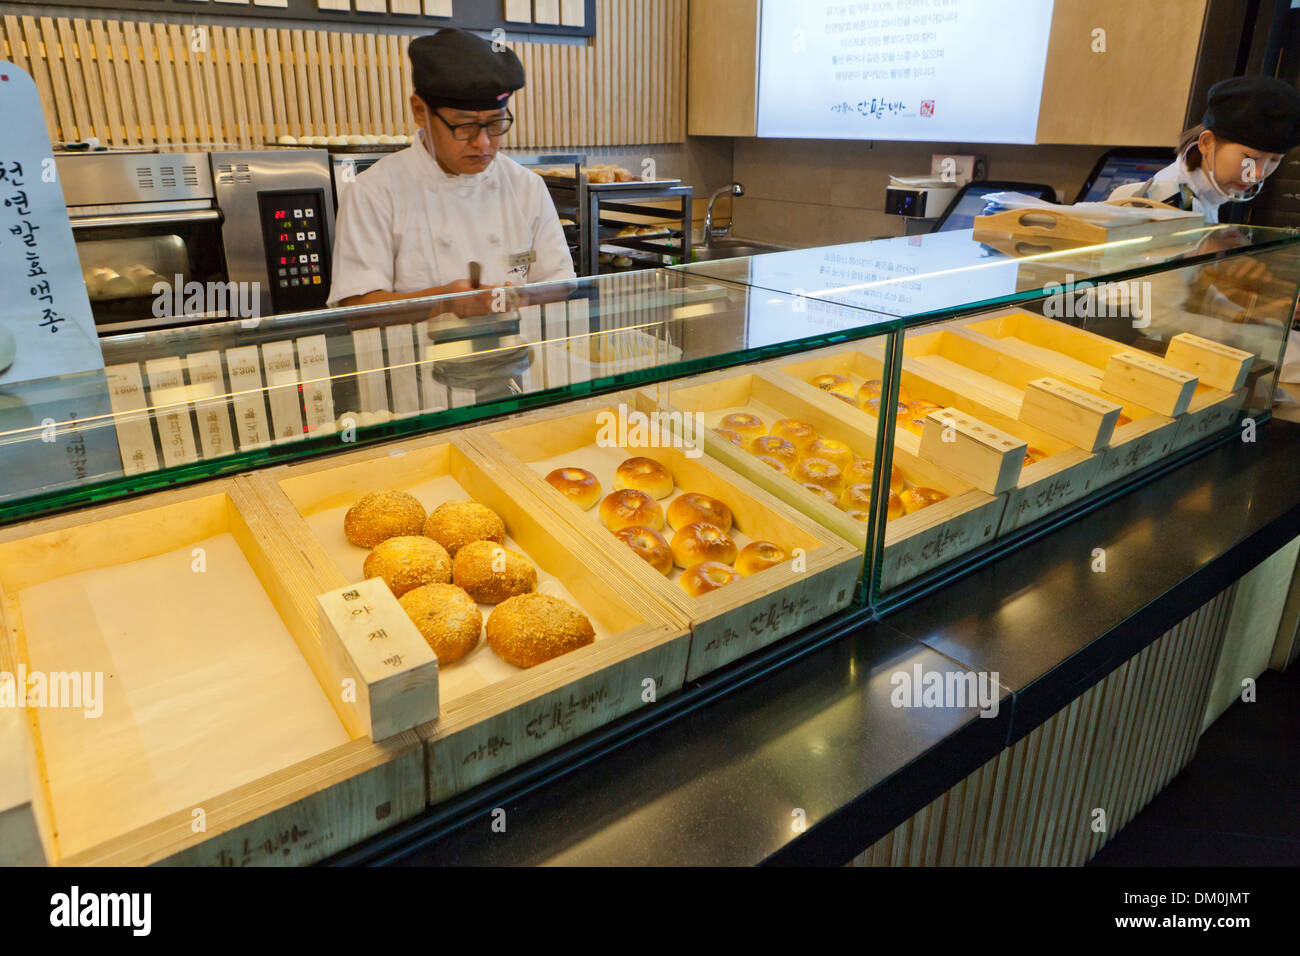 Baker faire du pain - Séoul, Corée du Sud Banque D'Images